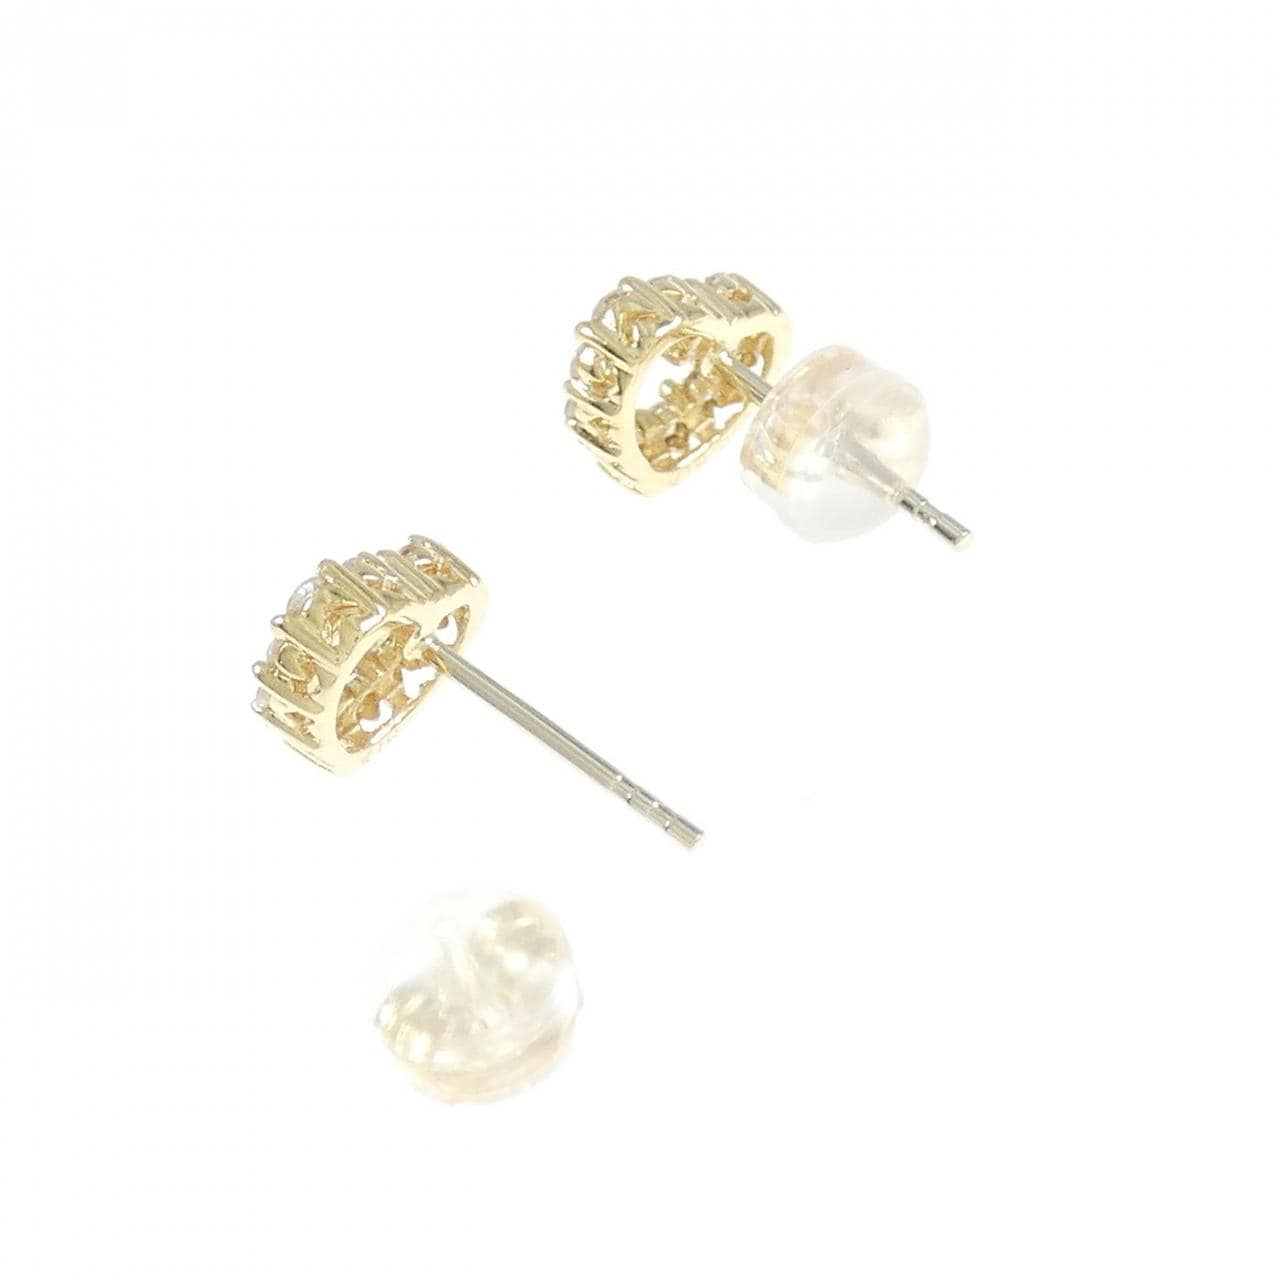 K18YG Heart Diamond Earrings 0.43CT